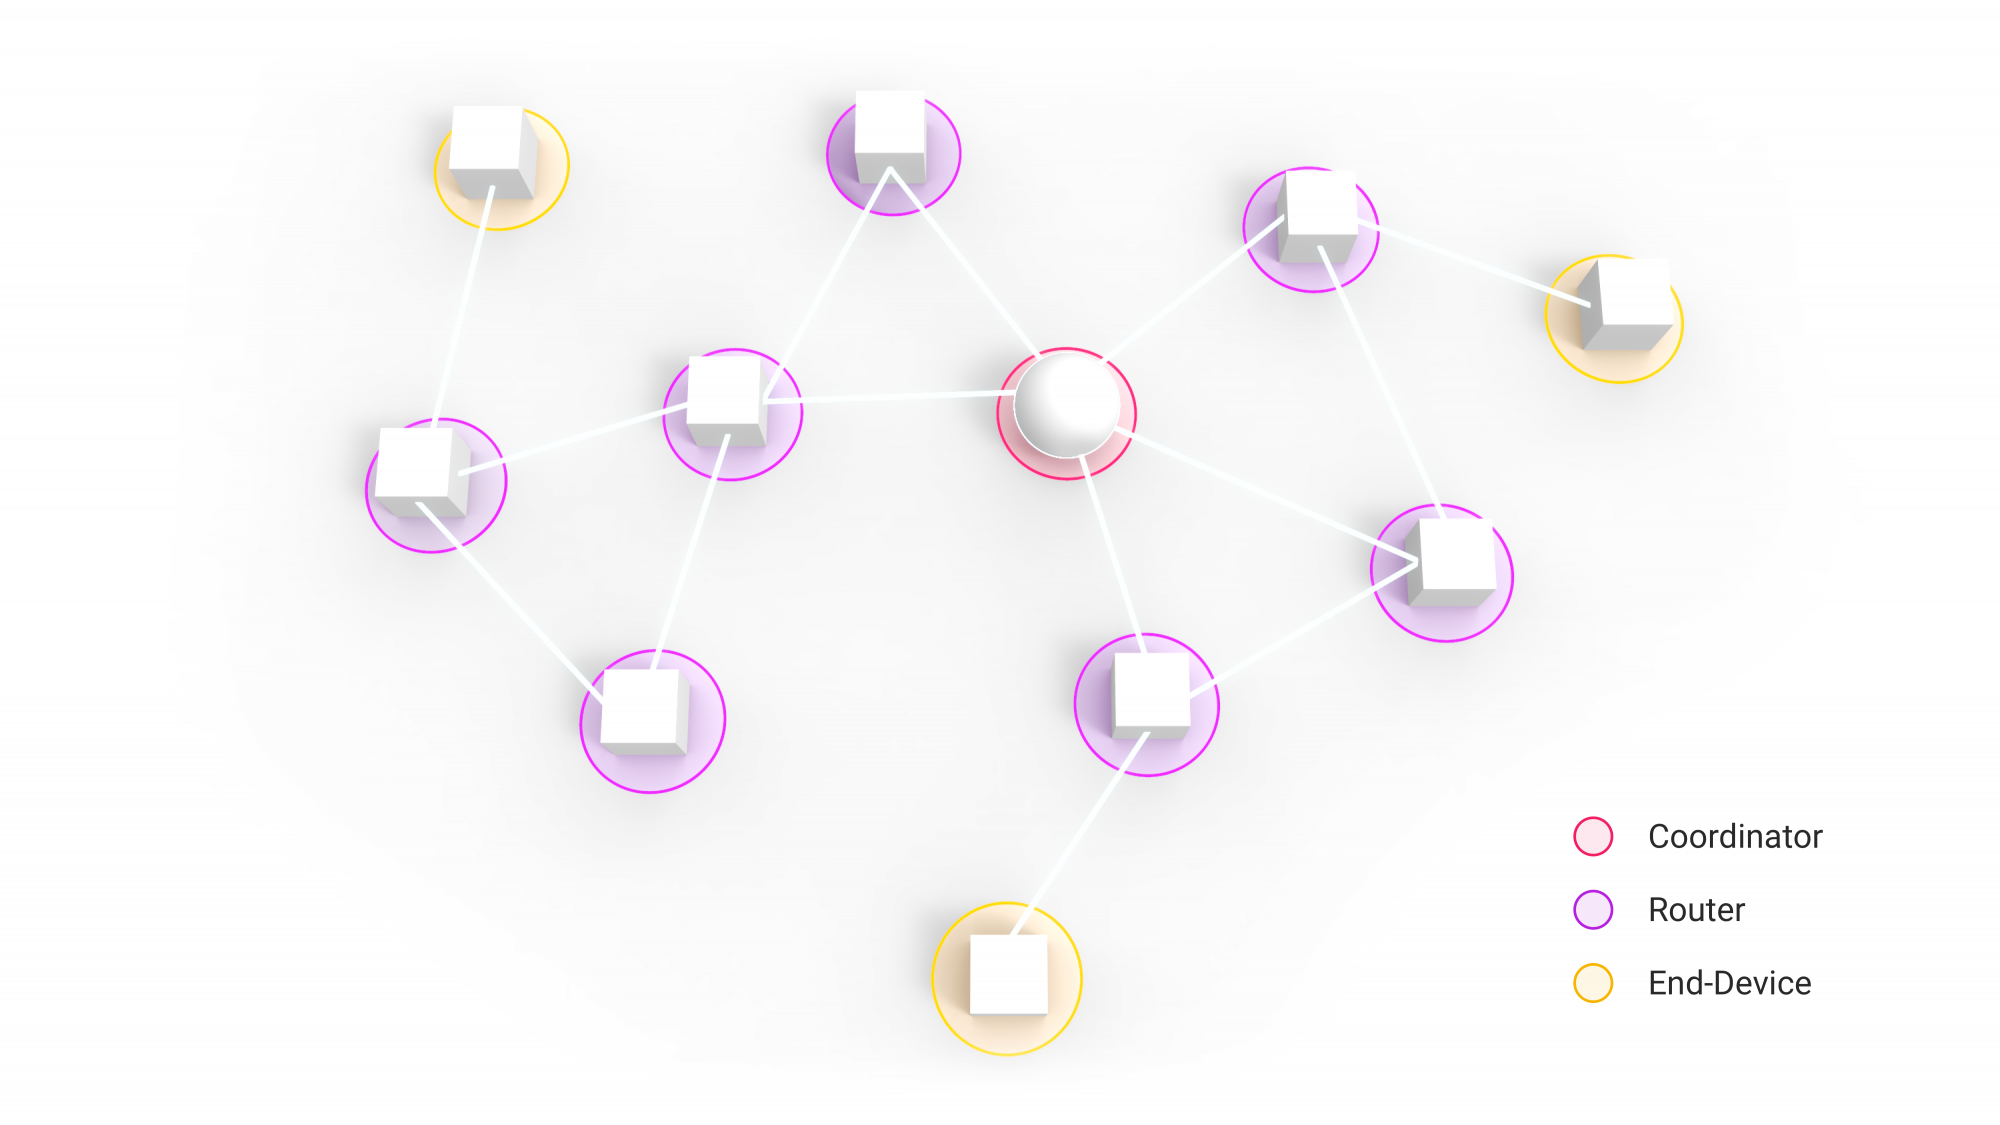 Zigbee mesh netwerk met rollen: coordinator, router, end-device